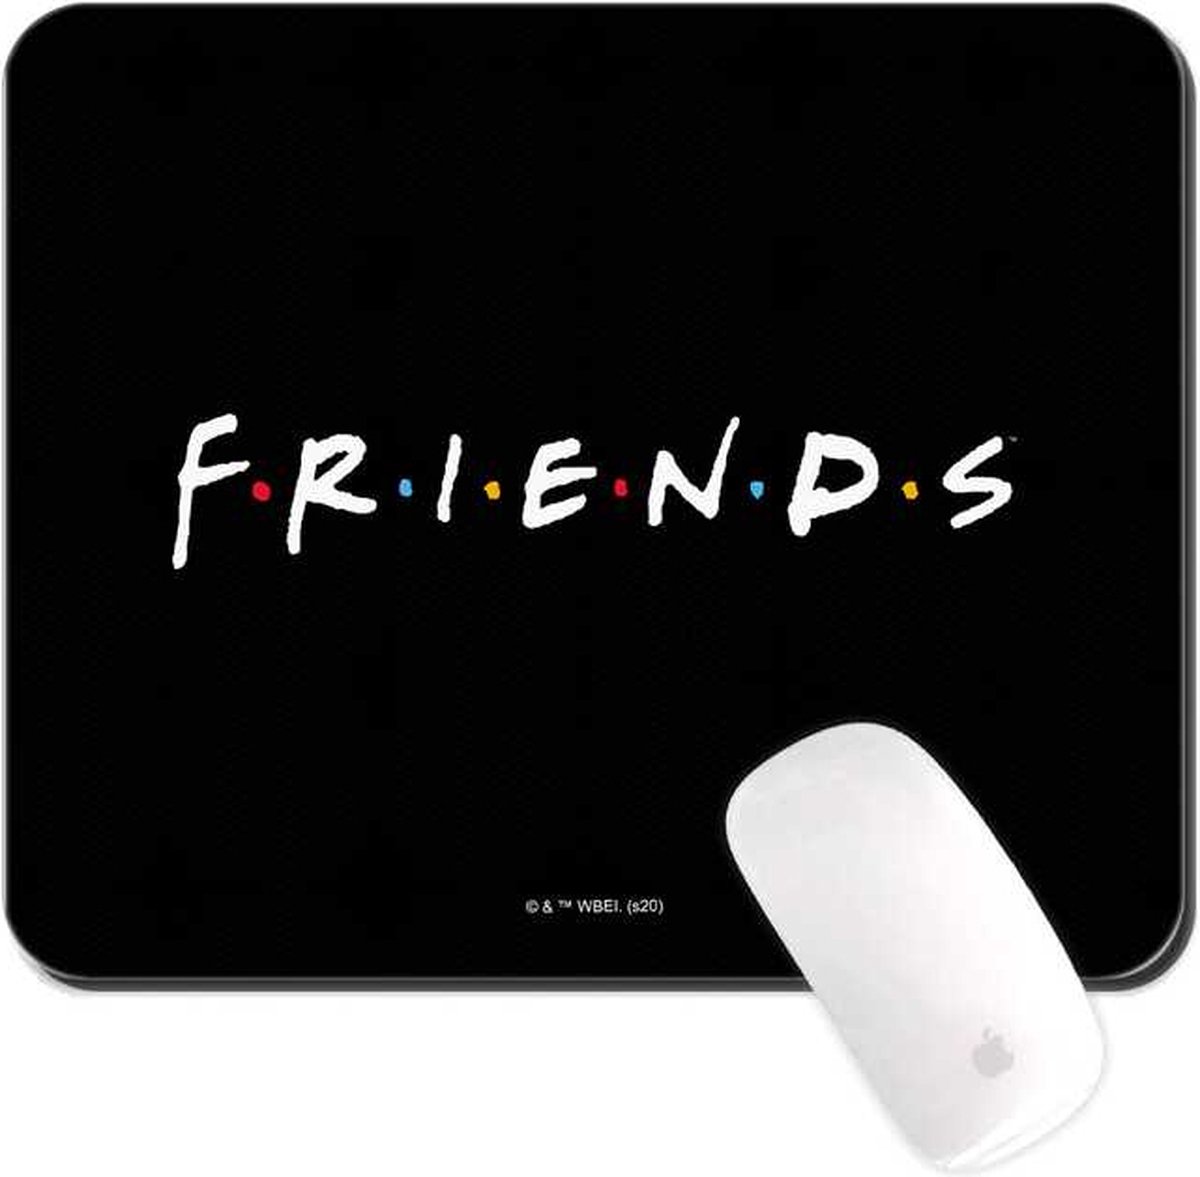 Friends TV serie - Muismat 22x18cm 3mm dik